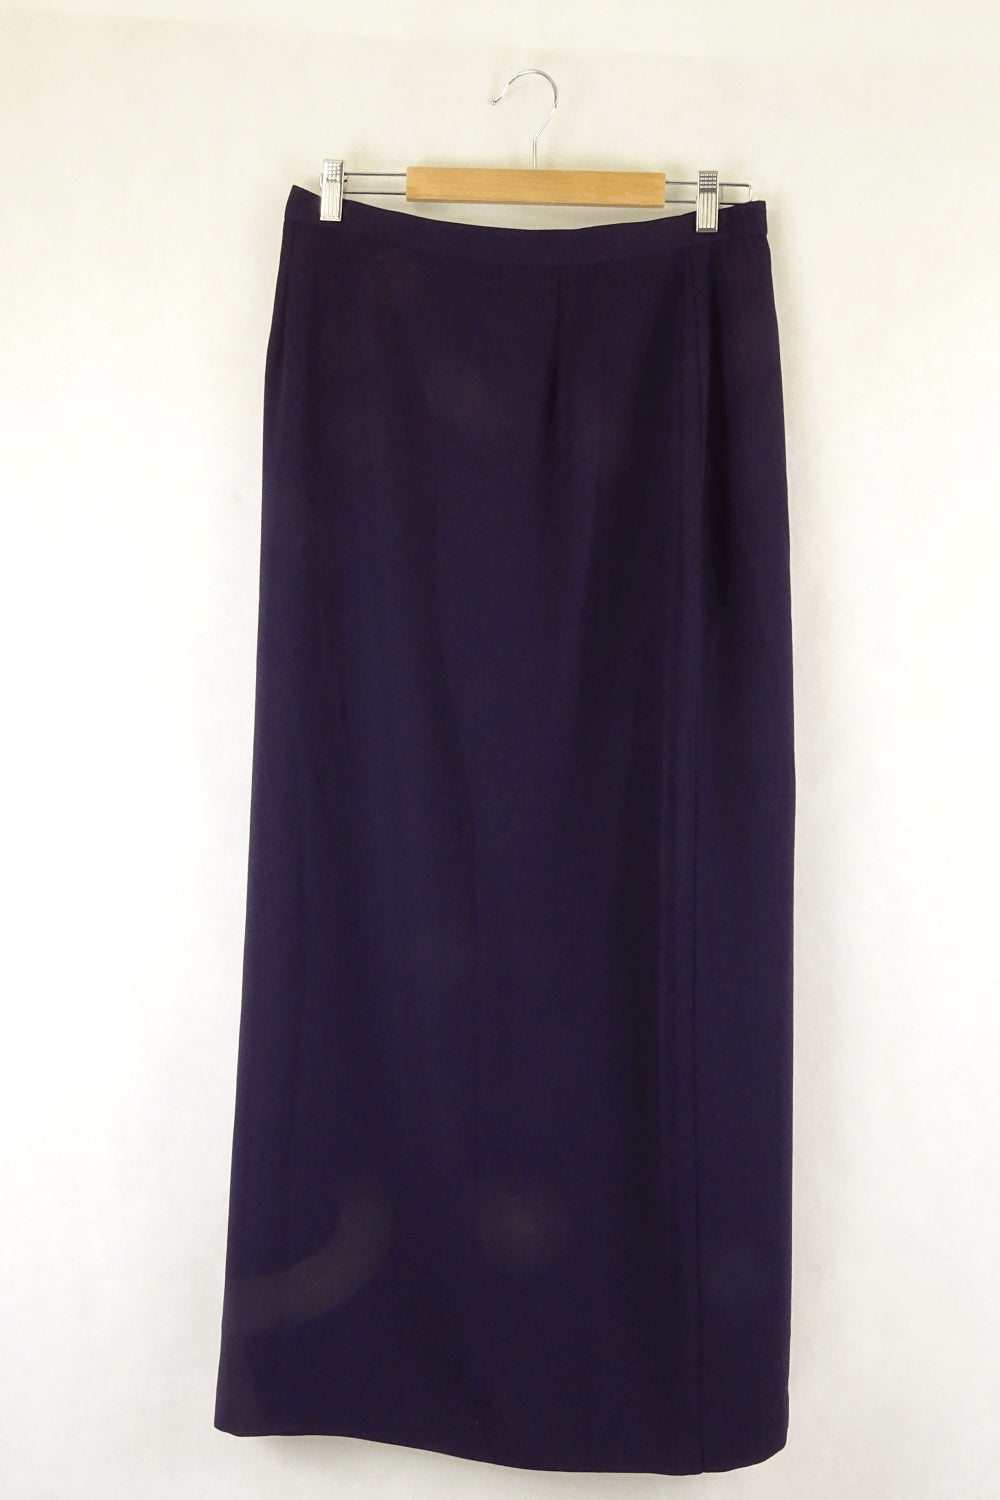 Liz Jordan Purple Skirt 14